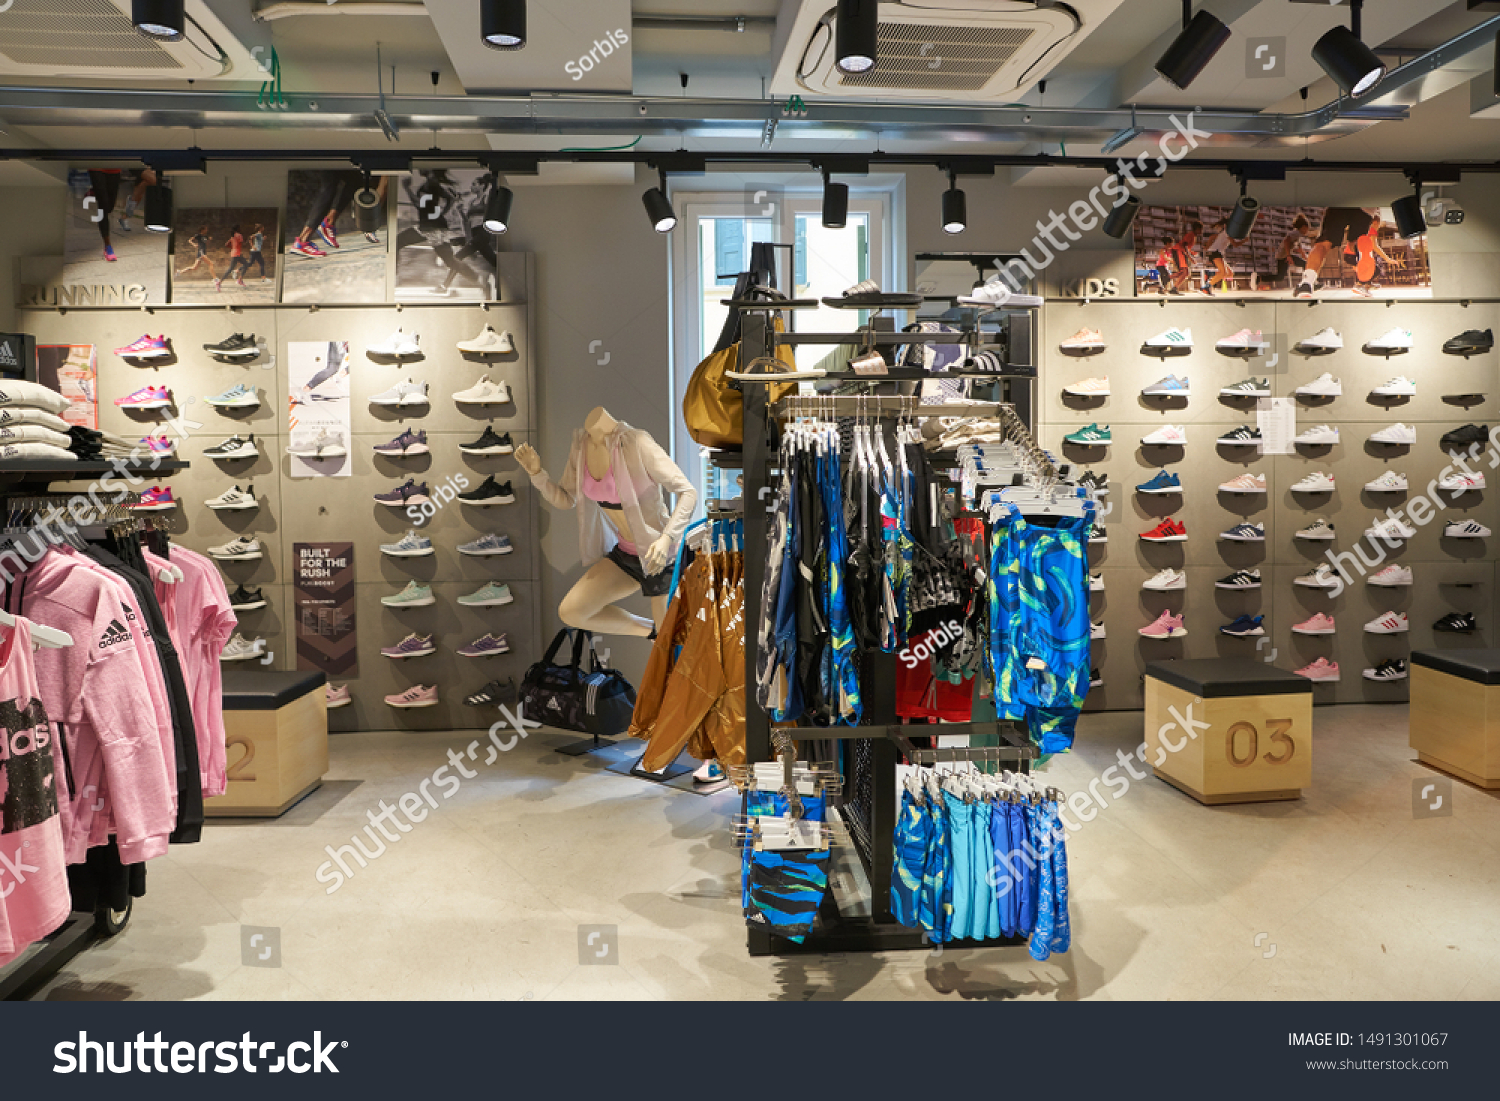 adidas shoe store in verona